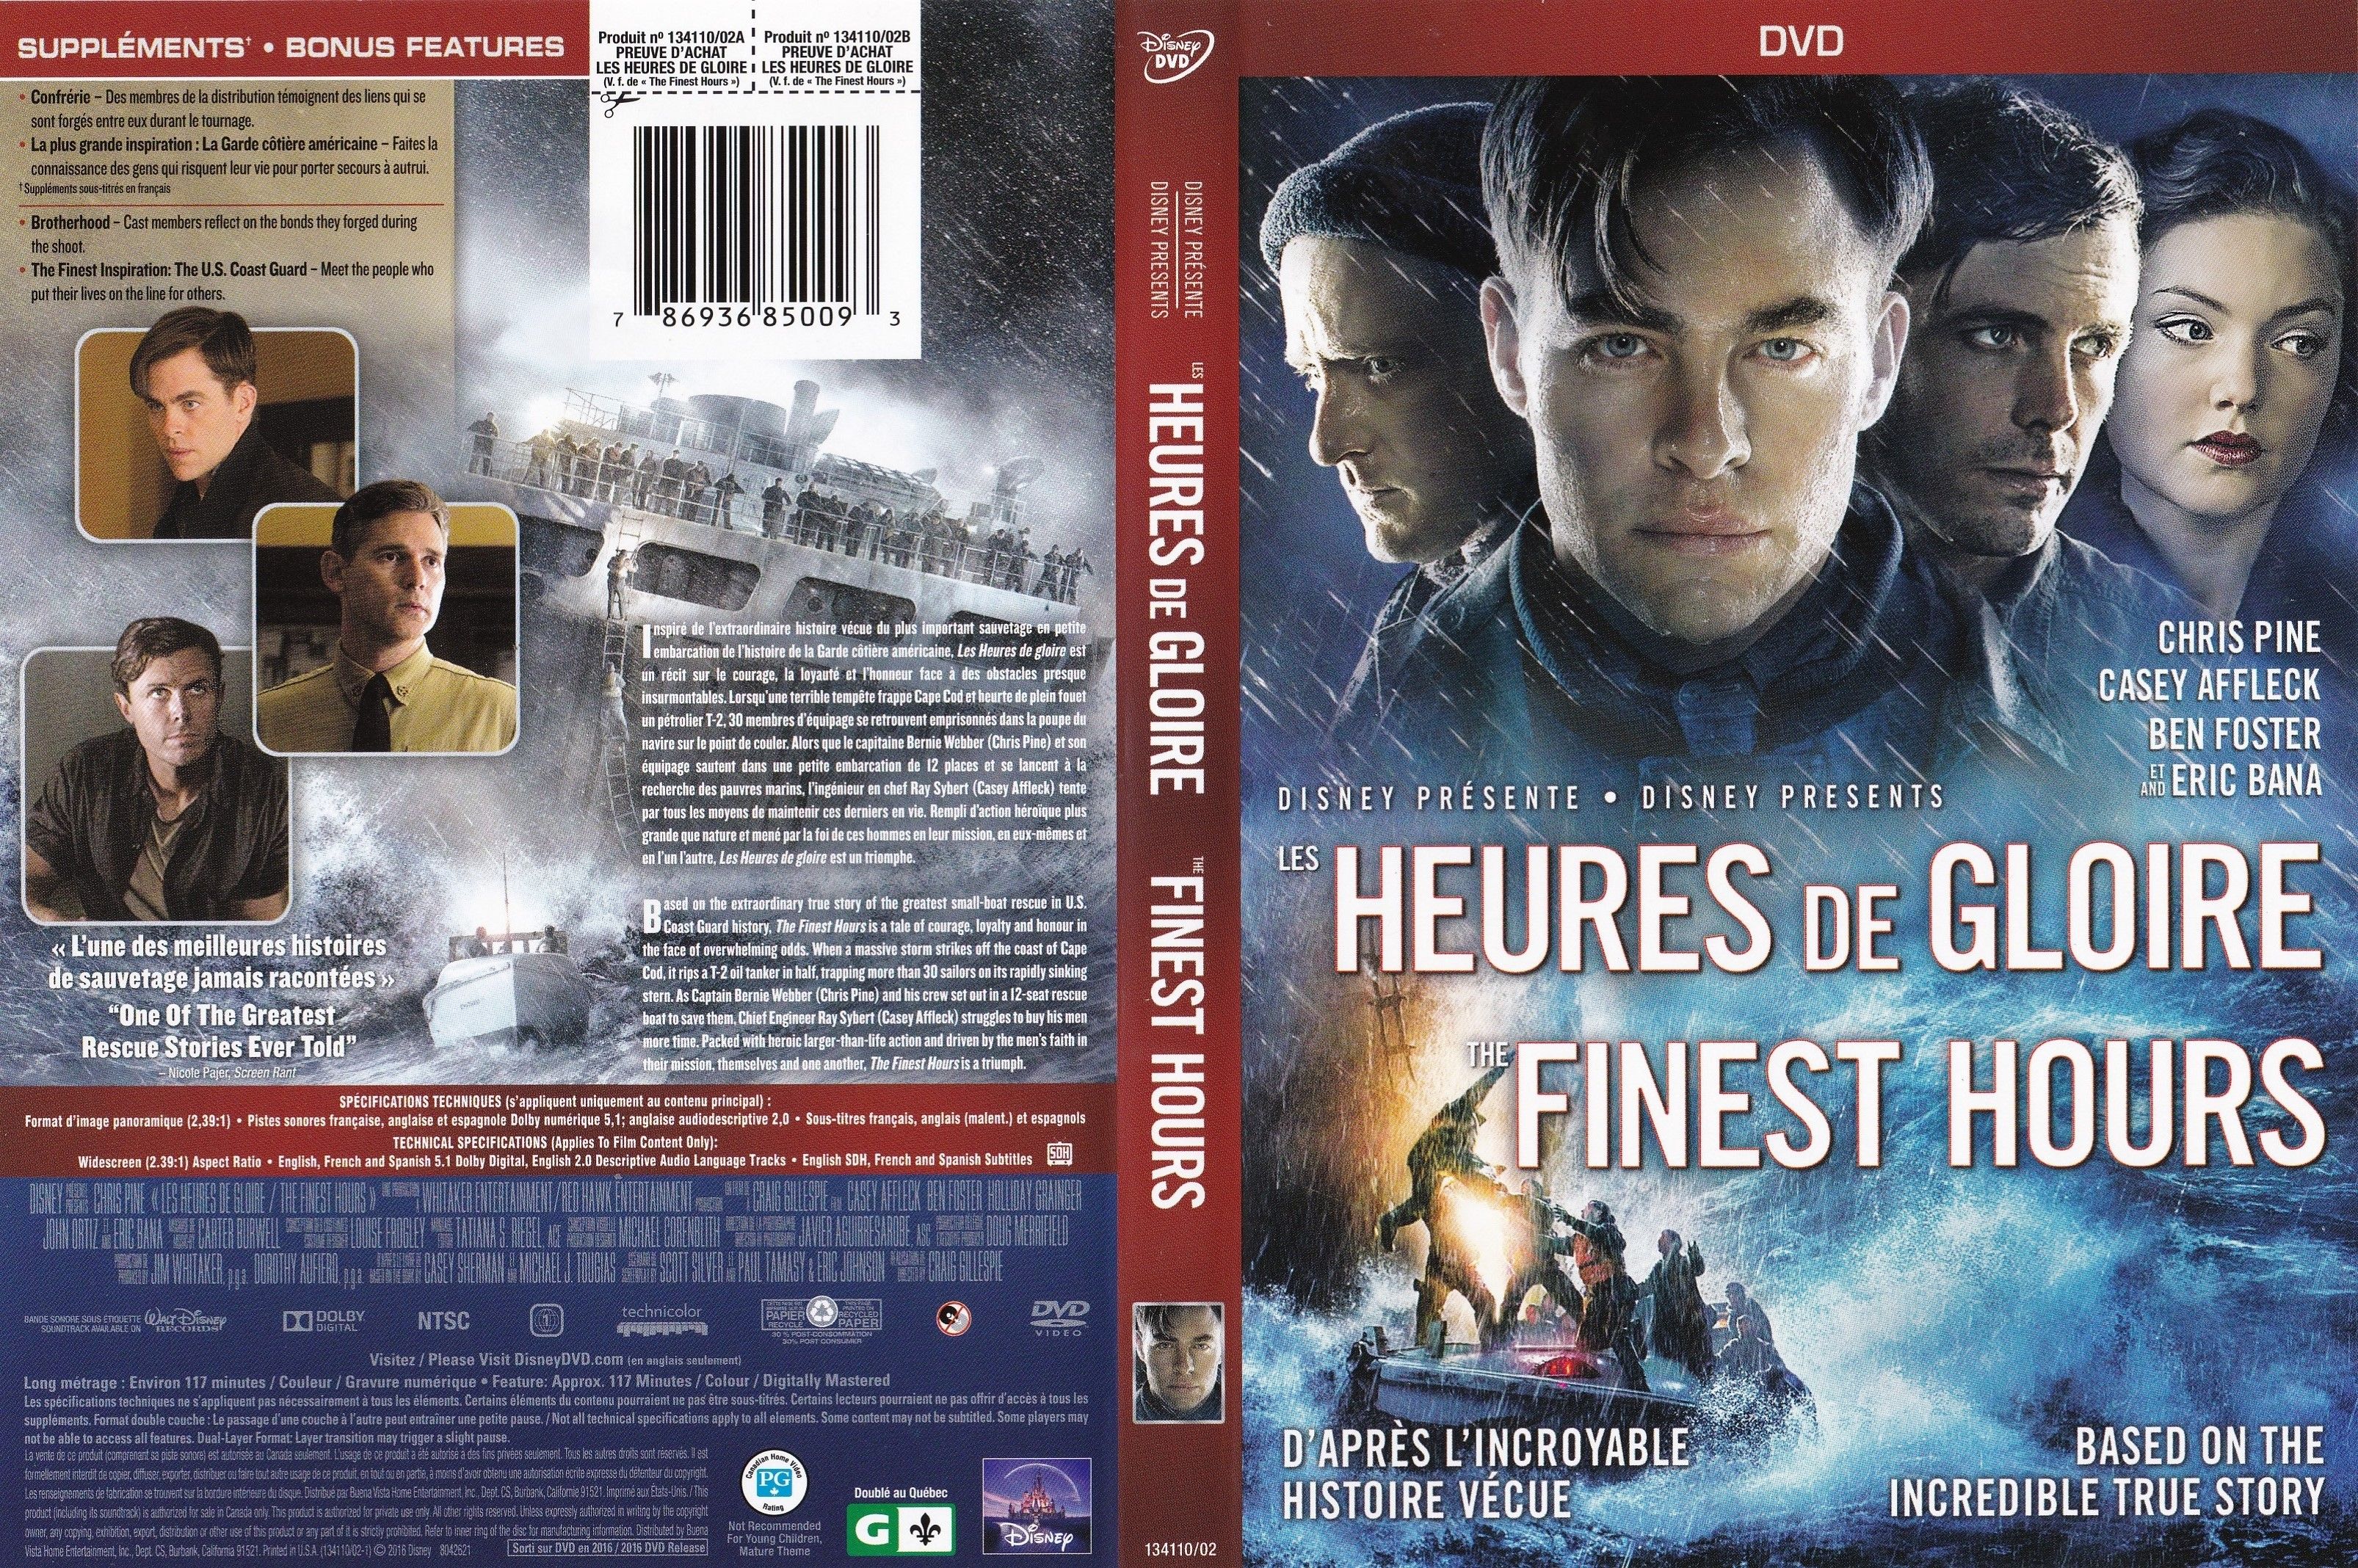 Jaquette DVD Les heures de gloire - The finest hours (canadienne)